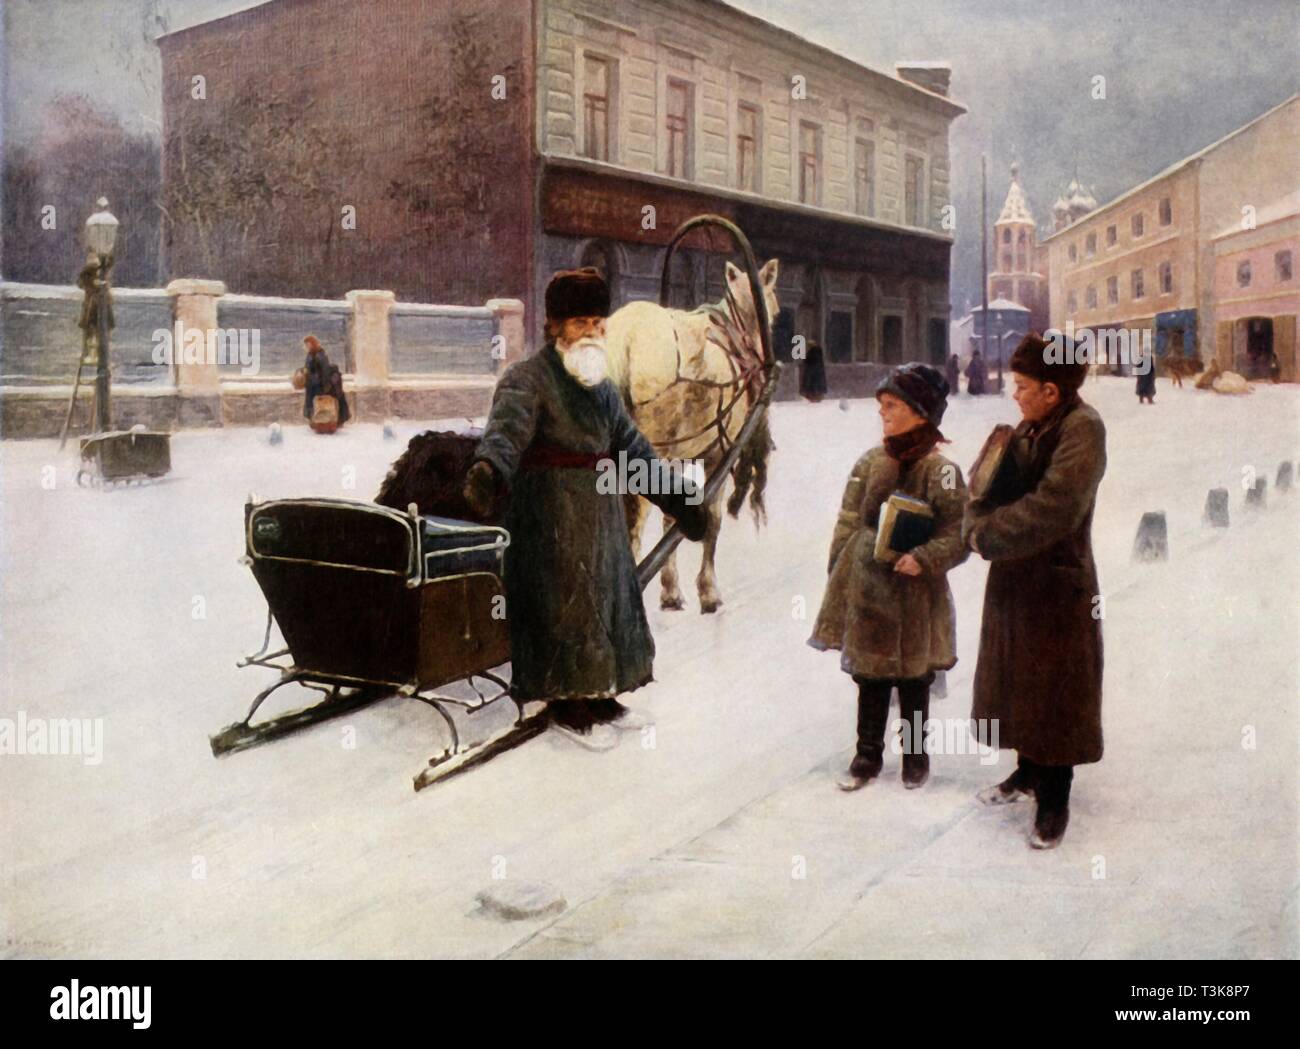 'The Joke', 1892, (1965). Creator: Nikolai Alekseevich Kasatkin. Stock Photo